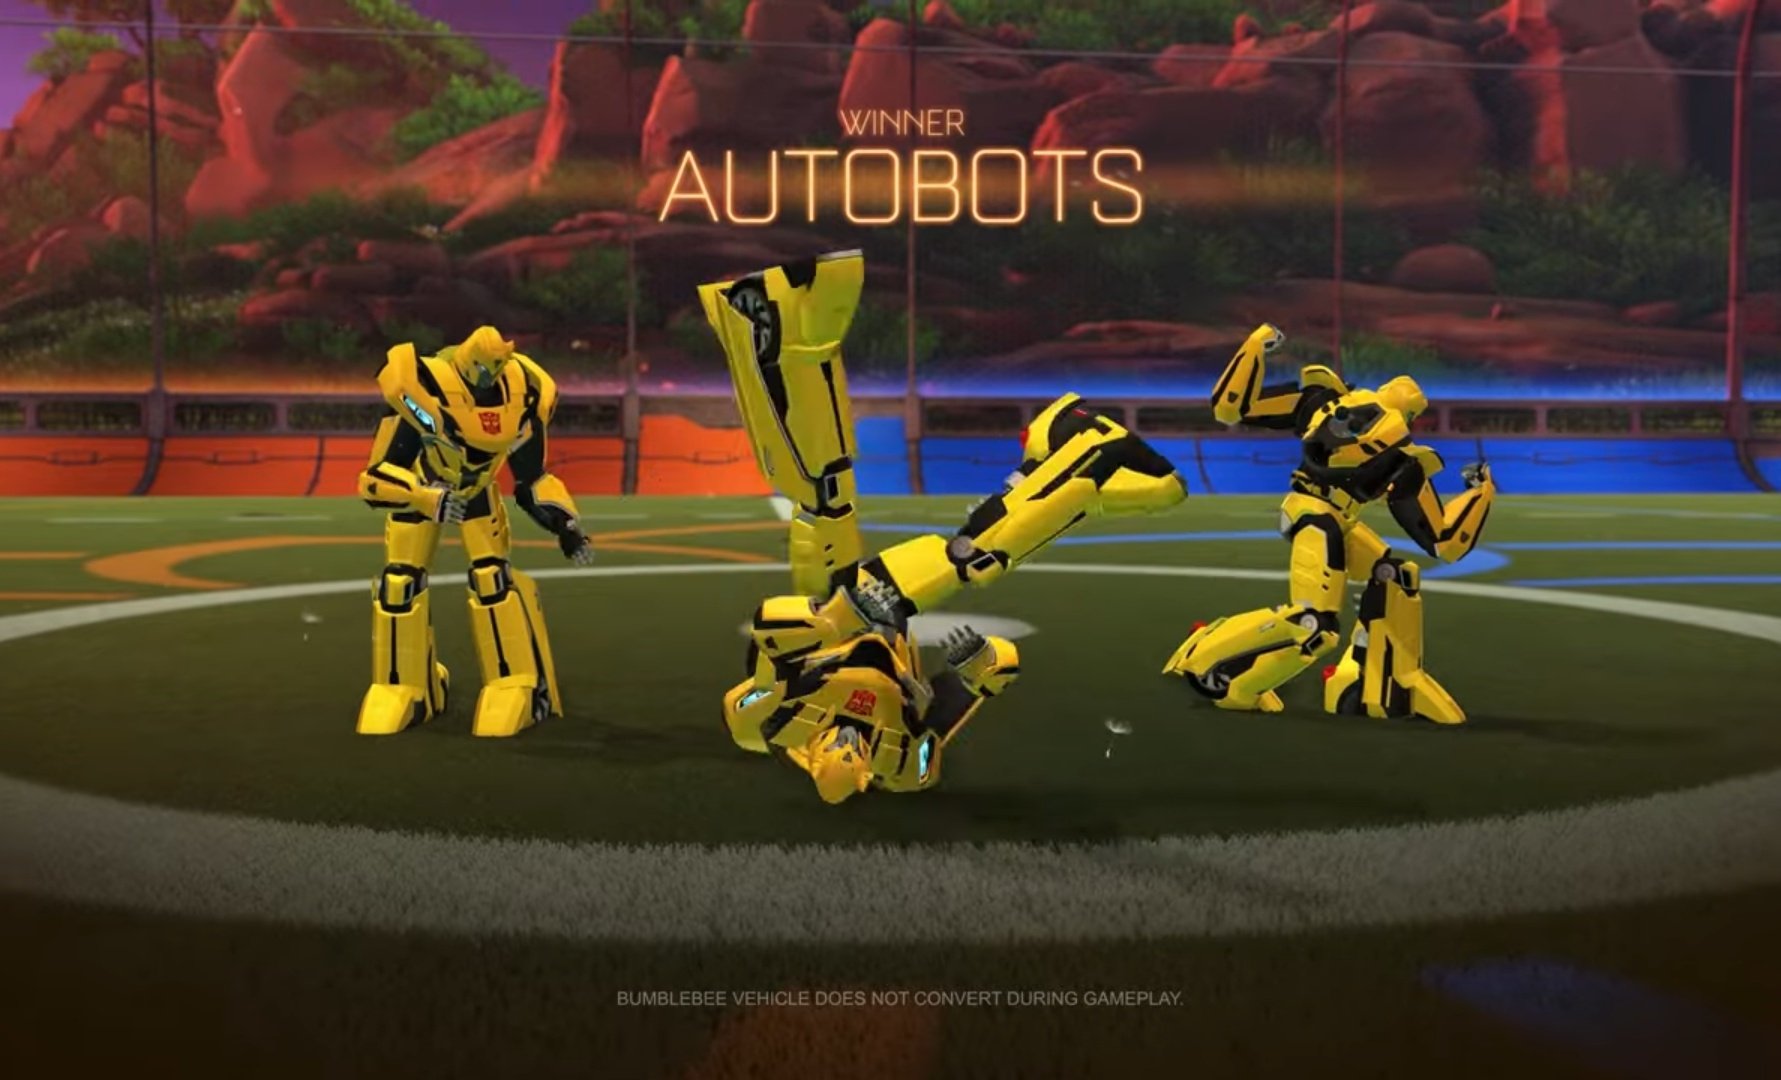 Rocket League X Transformers, la nueva colaboración de los autos futboleros. 2